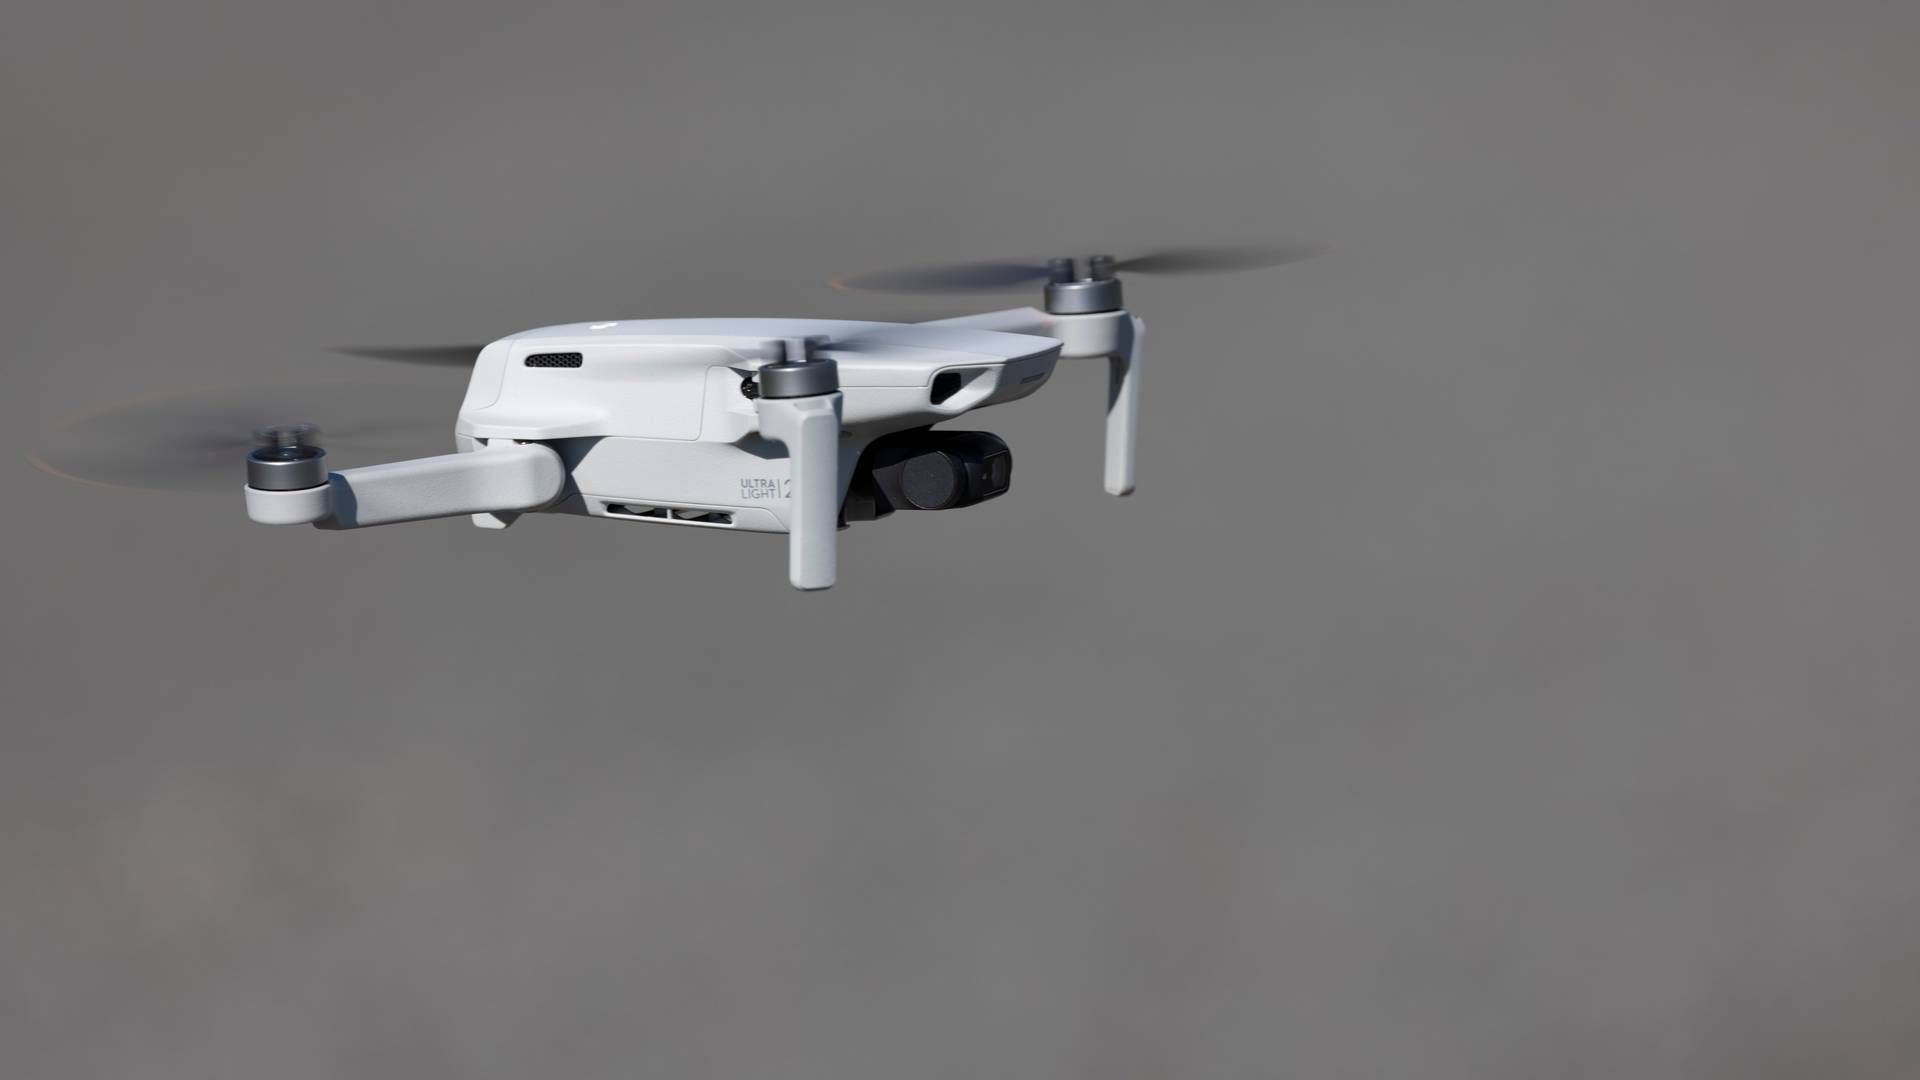 INGEN MISTENKTE: Det manglet informasjon i sakene rundt droneobservasjoner. Illustrasjonsfoto. | Foto: Geir Olsen/ NTB